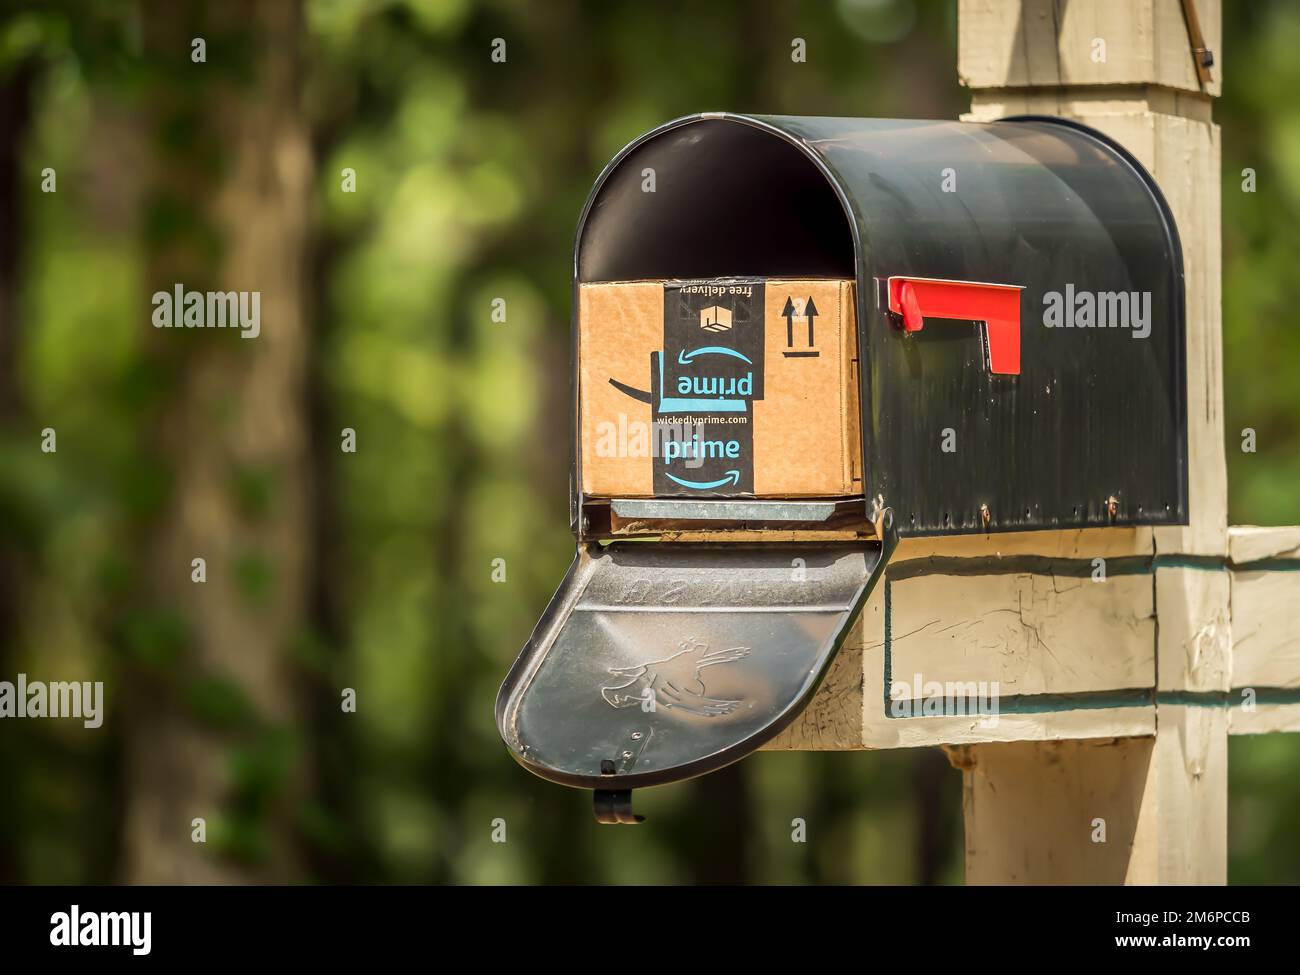 Amazon prime box immagini e fotografie stock ad alta risoluzione - Alamy